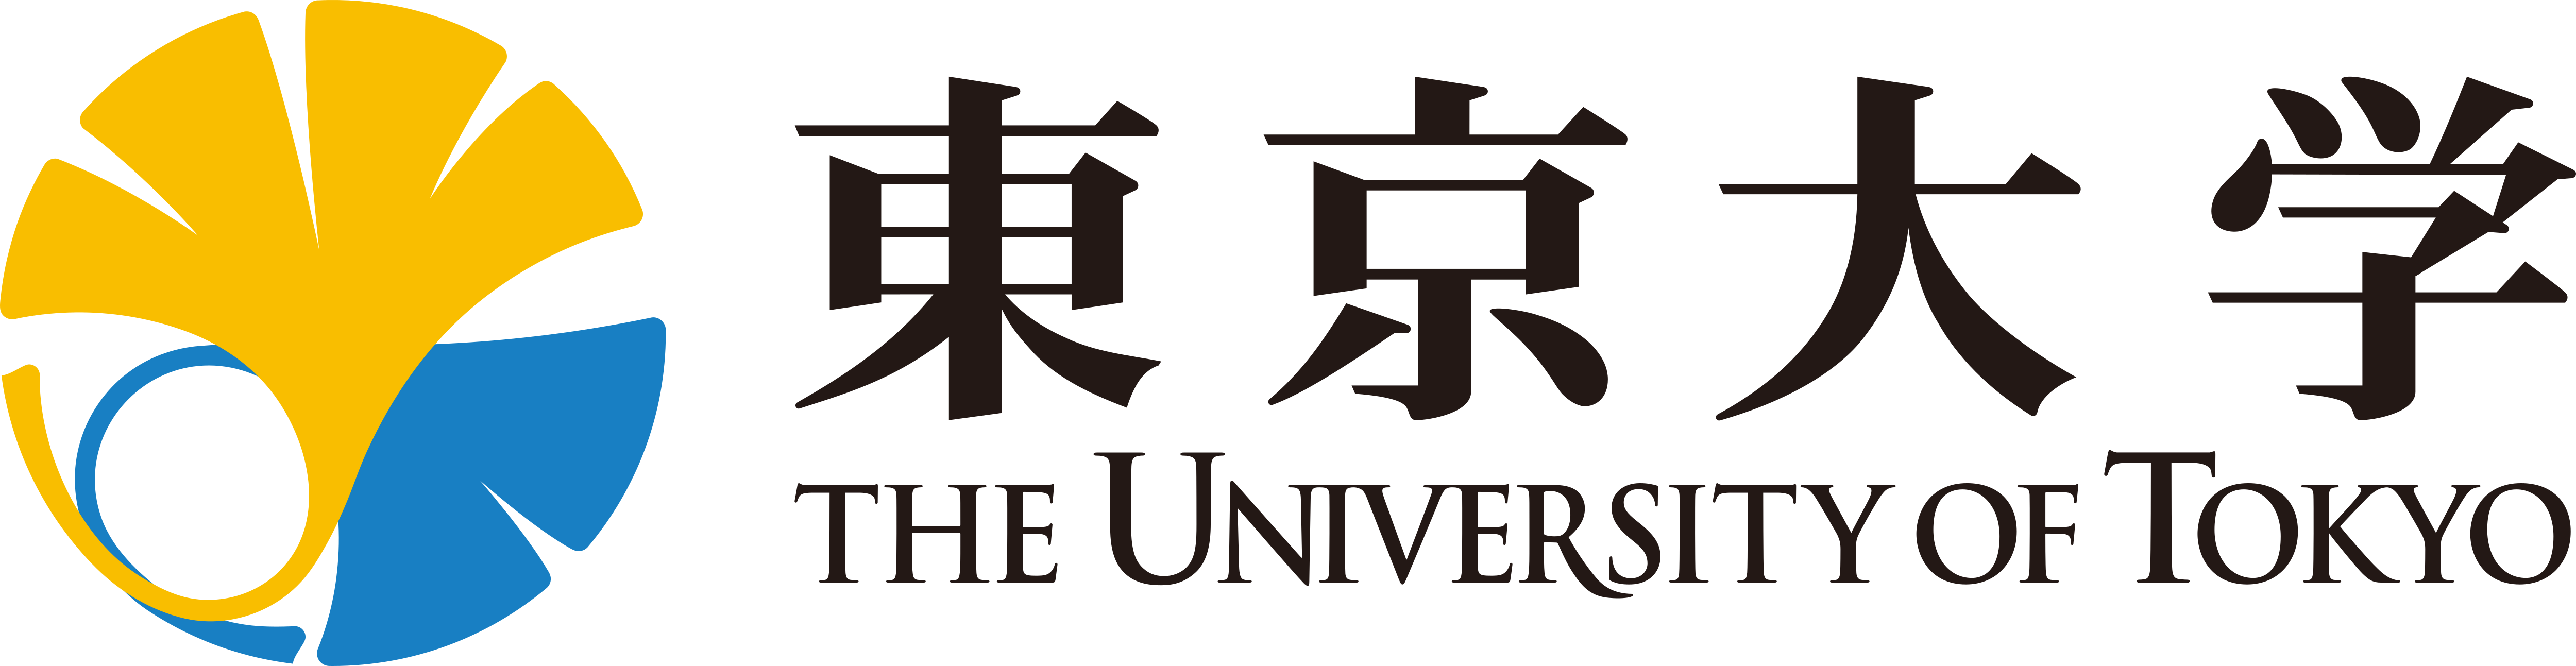 Universiteit van Tokio – Logo's downloaden